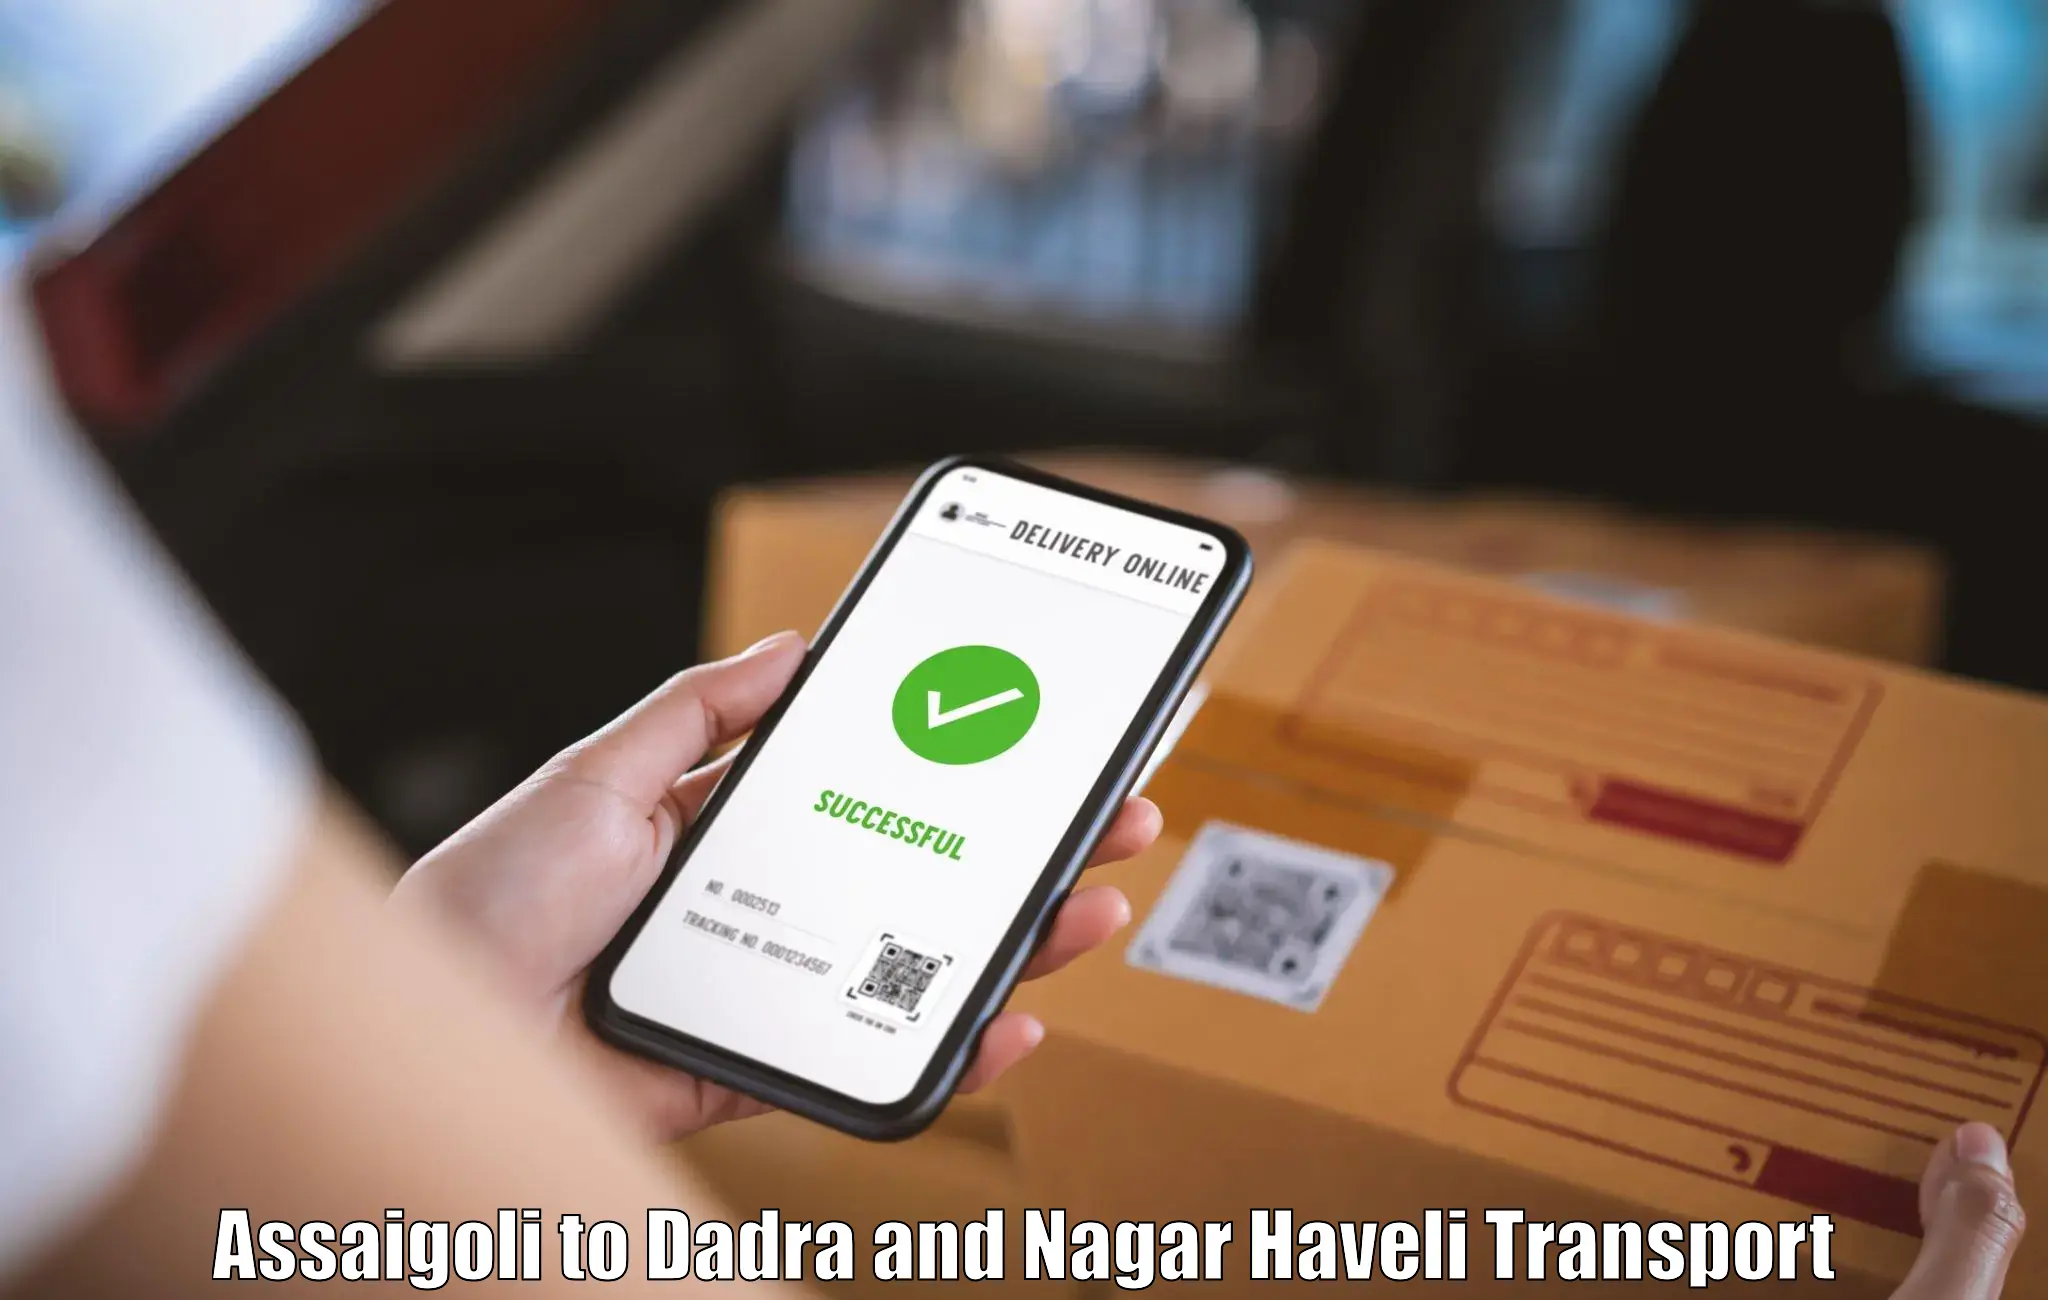 Transport services Assaigoli to Dadra and Nagar Haveli